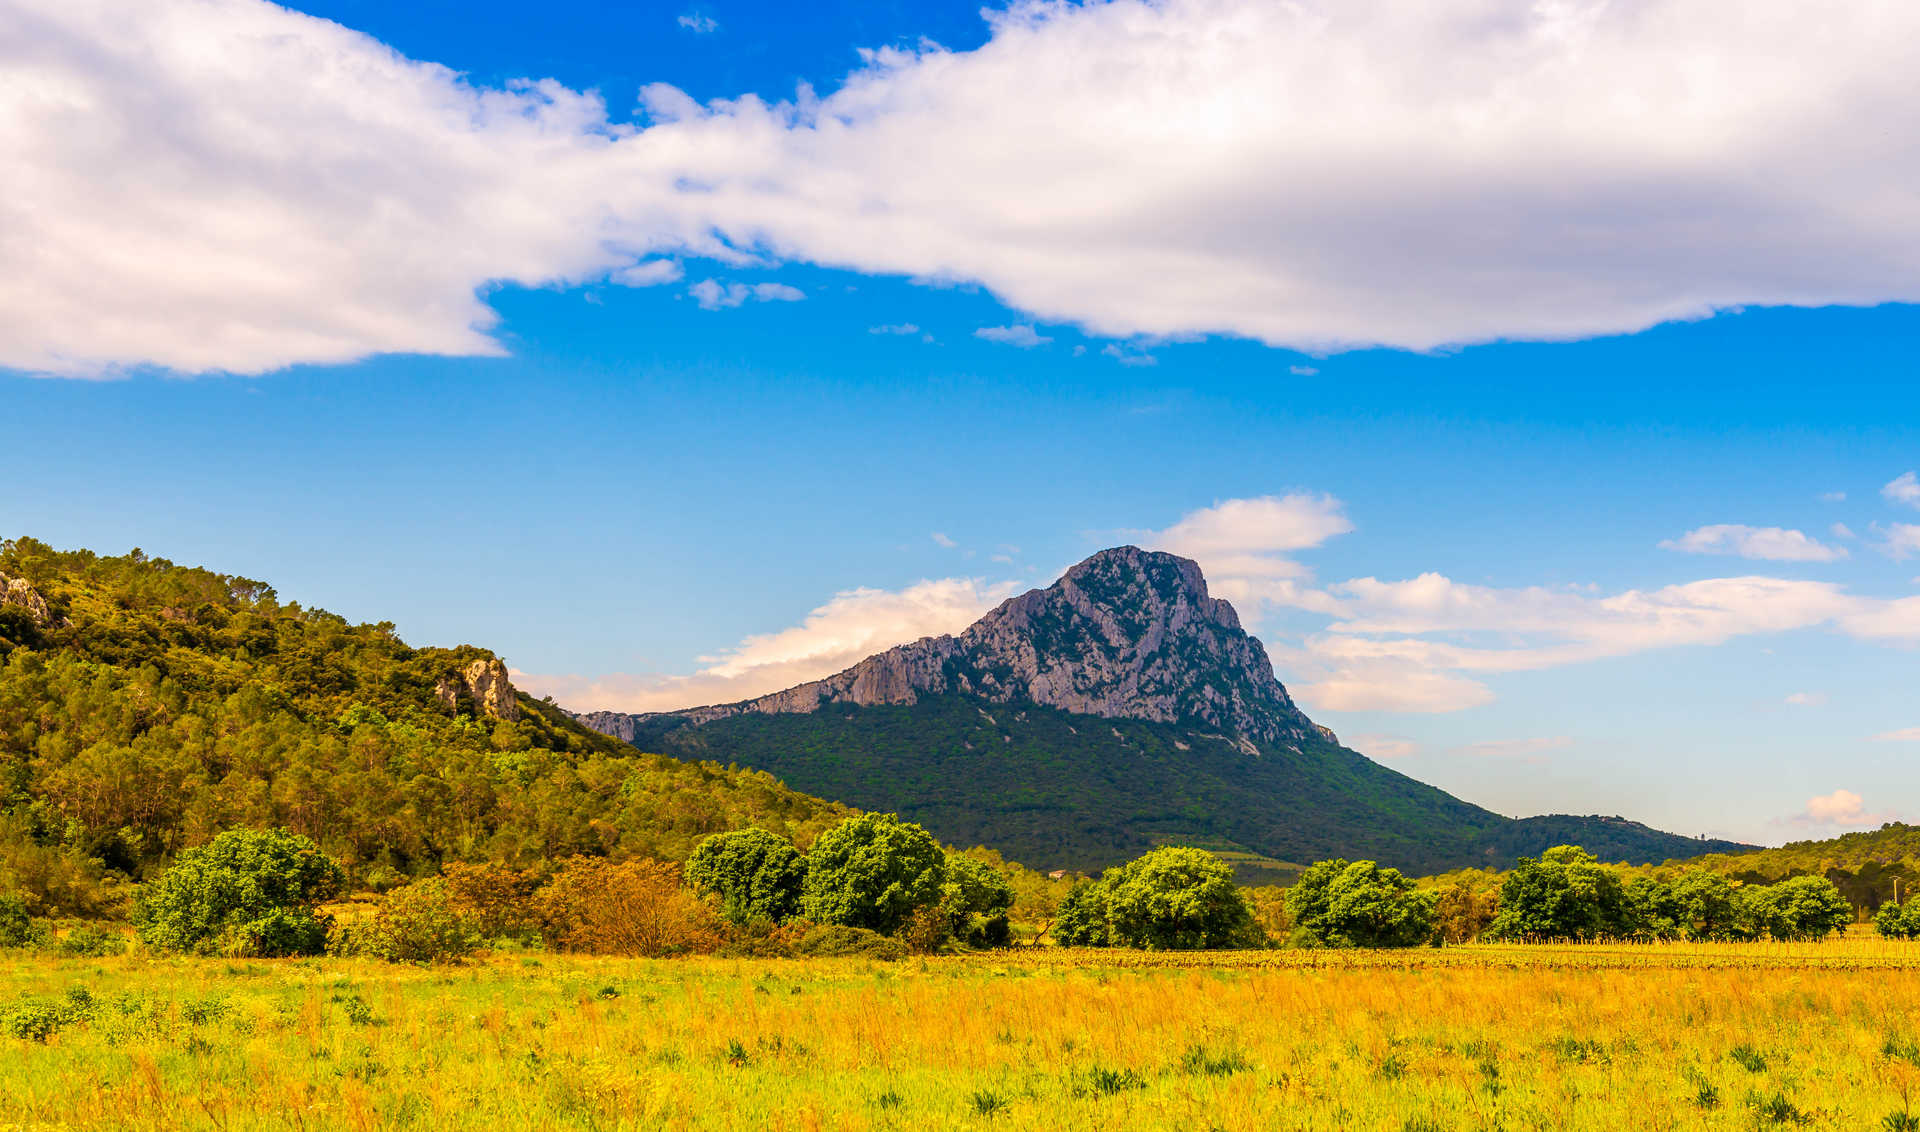 photo du Pic Saint loup montagne emblématique d'Occitanie